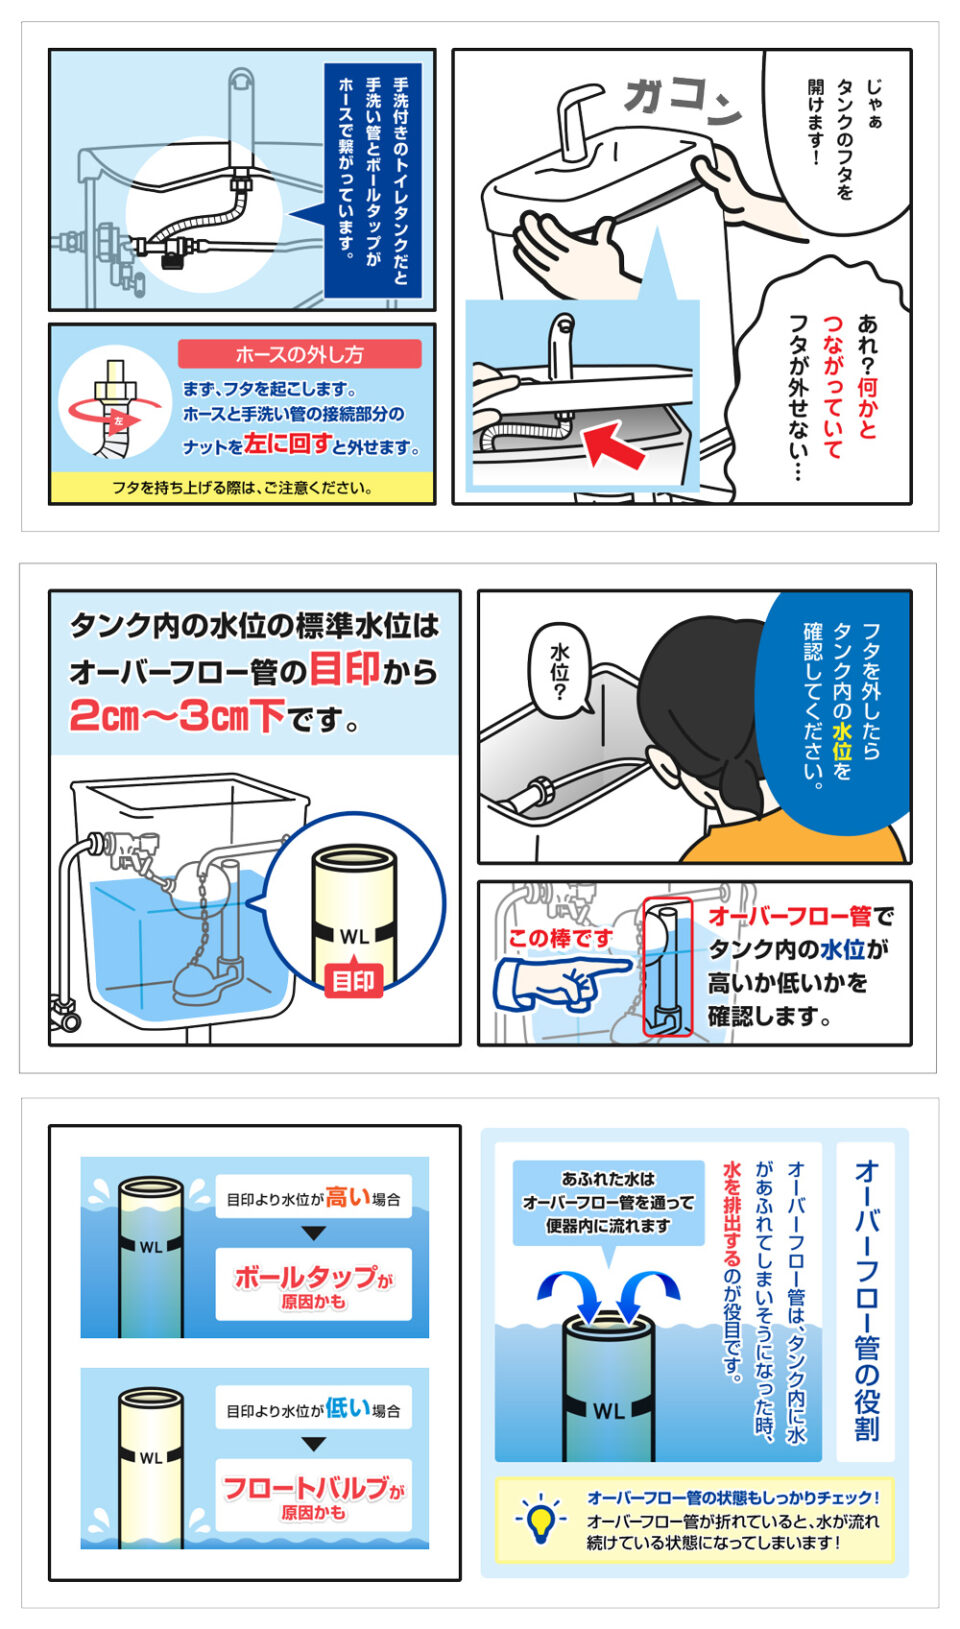 トイレタンクの水漏れ修理方法-3